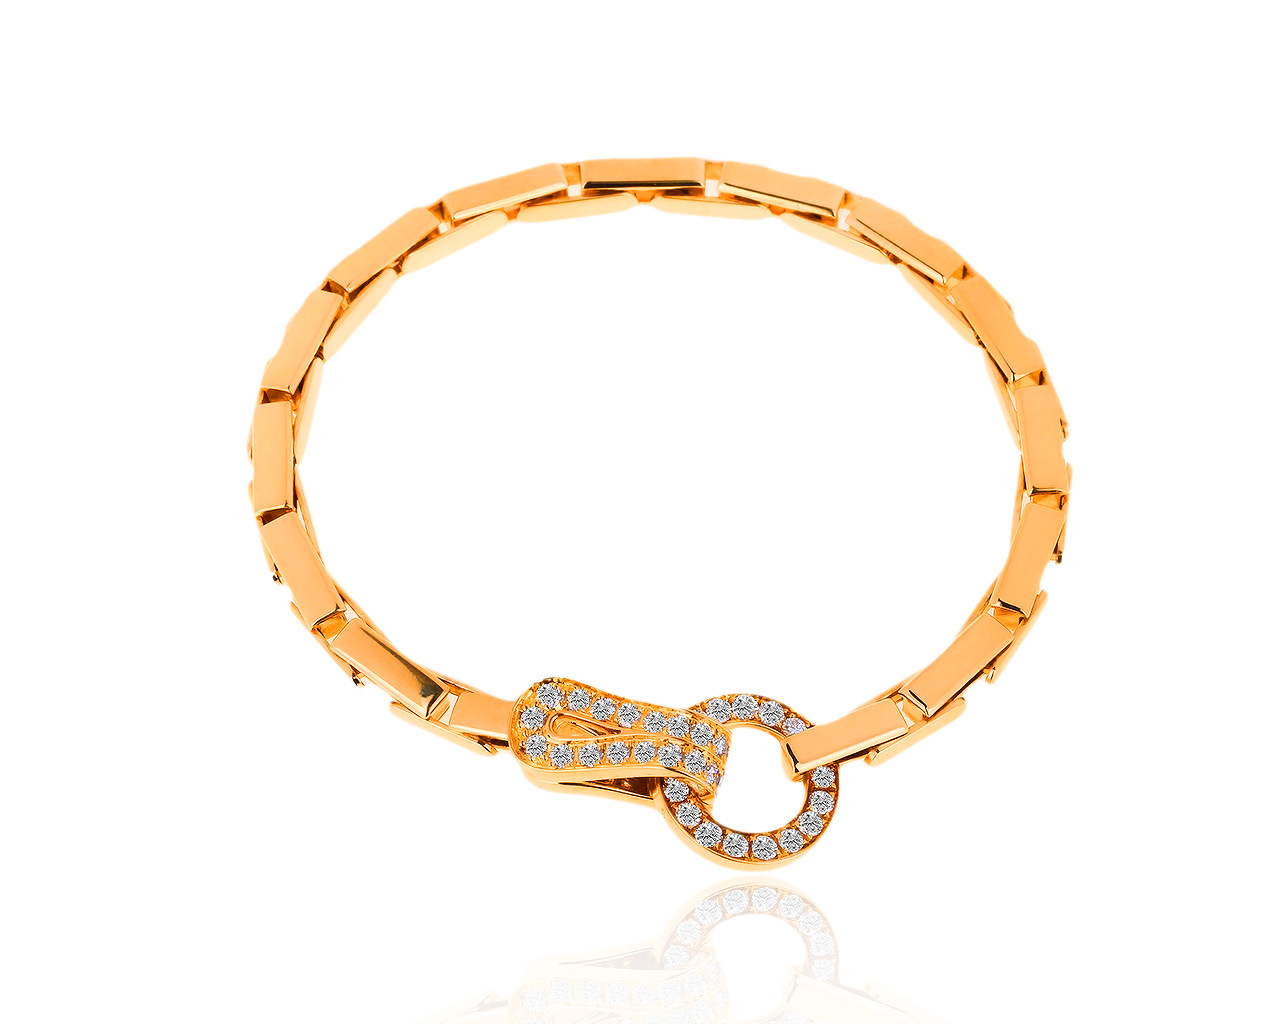 Оригинальный золотой браслет с бриллиантами 0.90ct Cartier Agrafe 211218/1